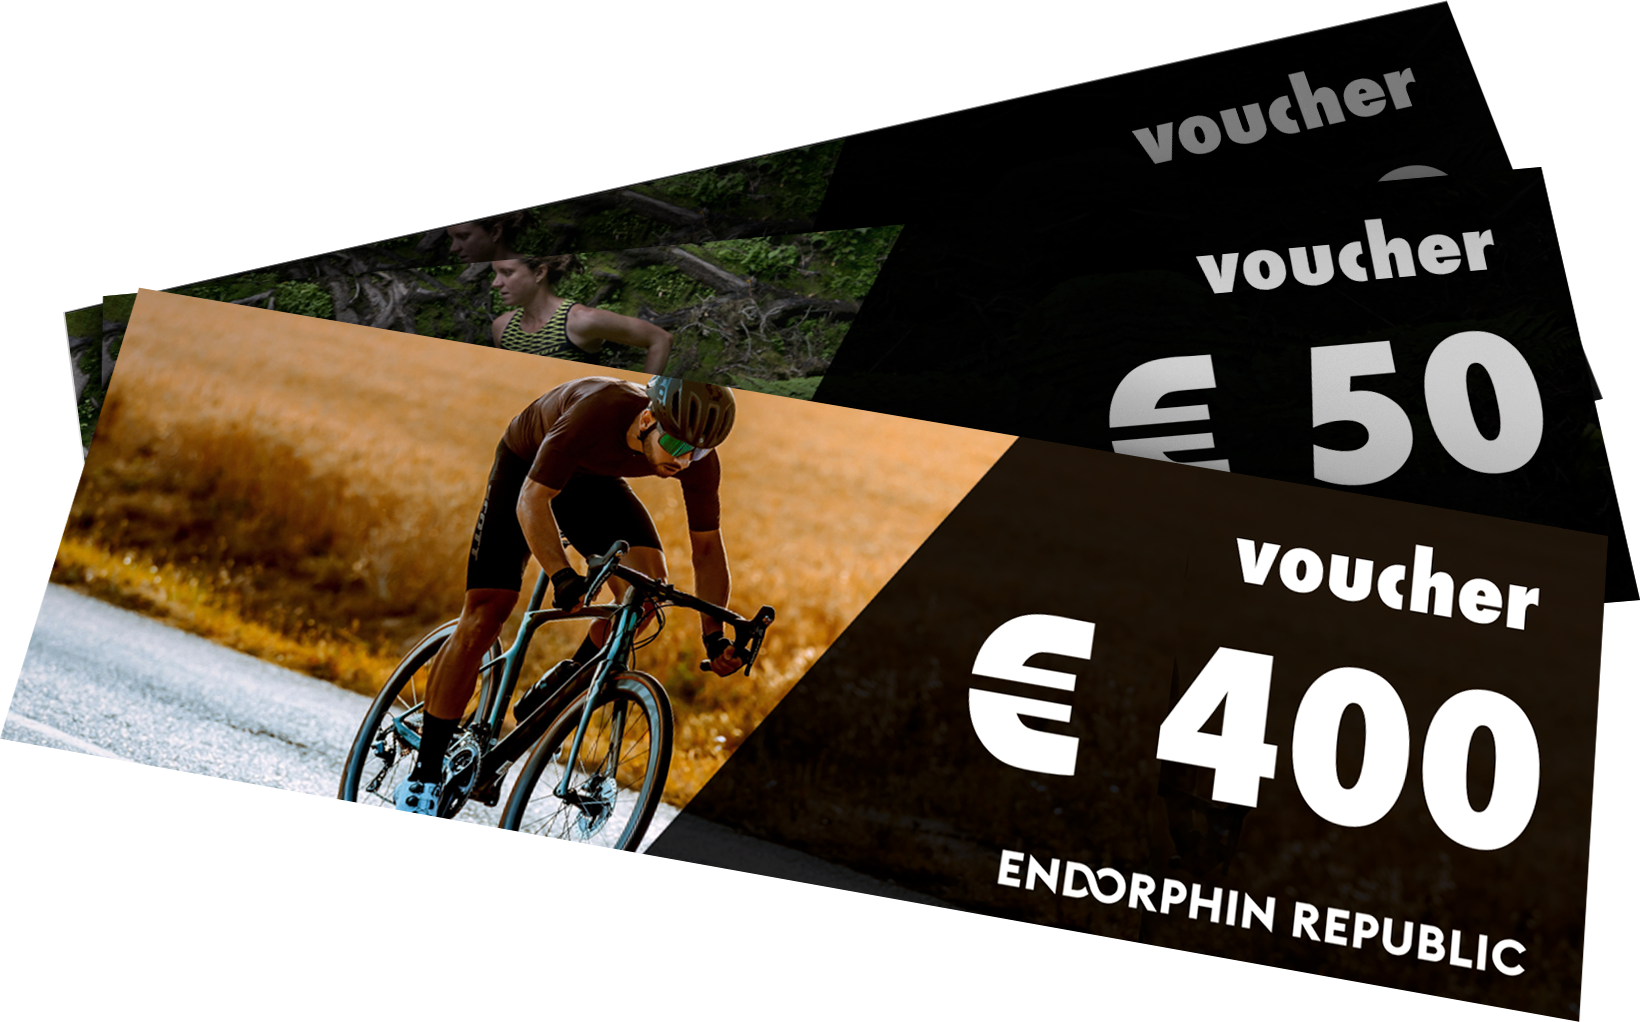 Odmeny:
1x Poukažky 400€
3x Poukažky50€
20% zľava pre všetkých úspešných účastníkov challenge
